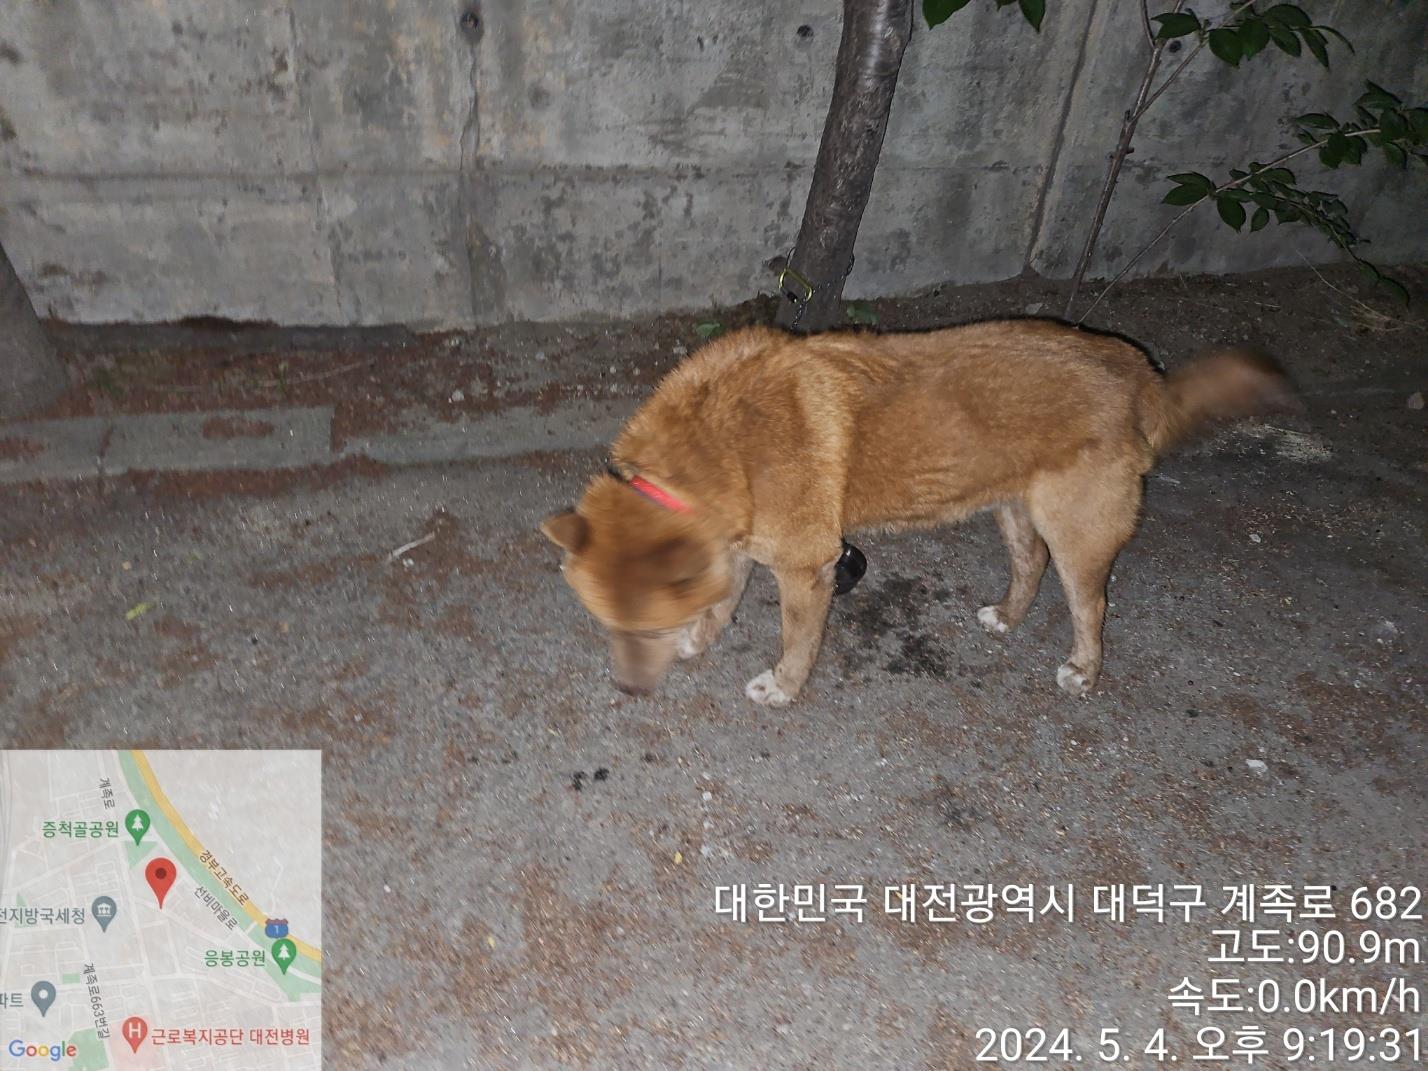 공고 번호가 대전-대덕-2024-00084인 기타 동물 사진